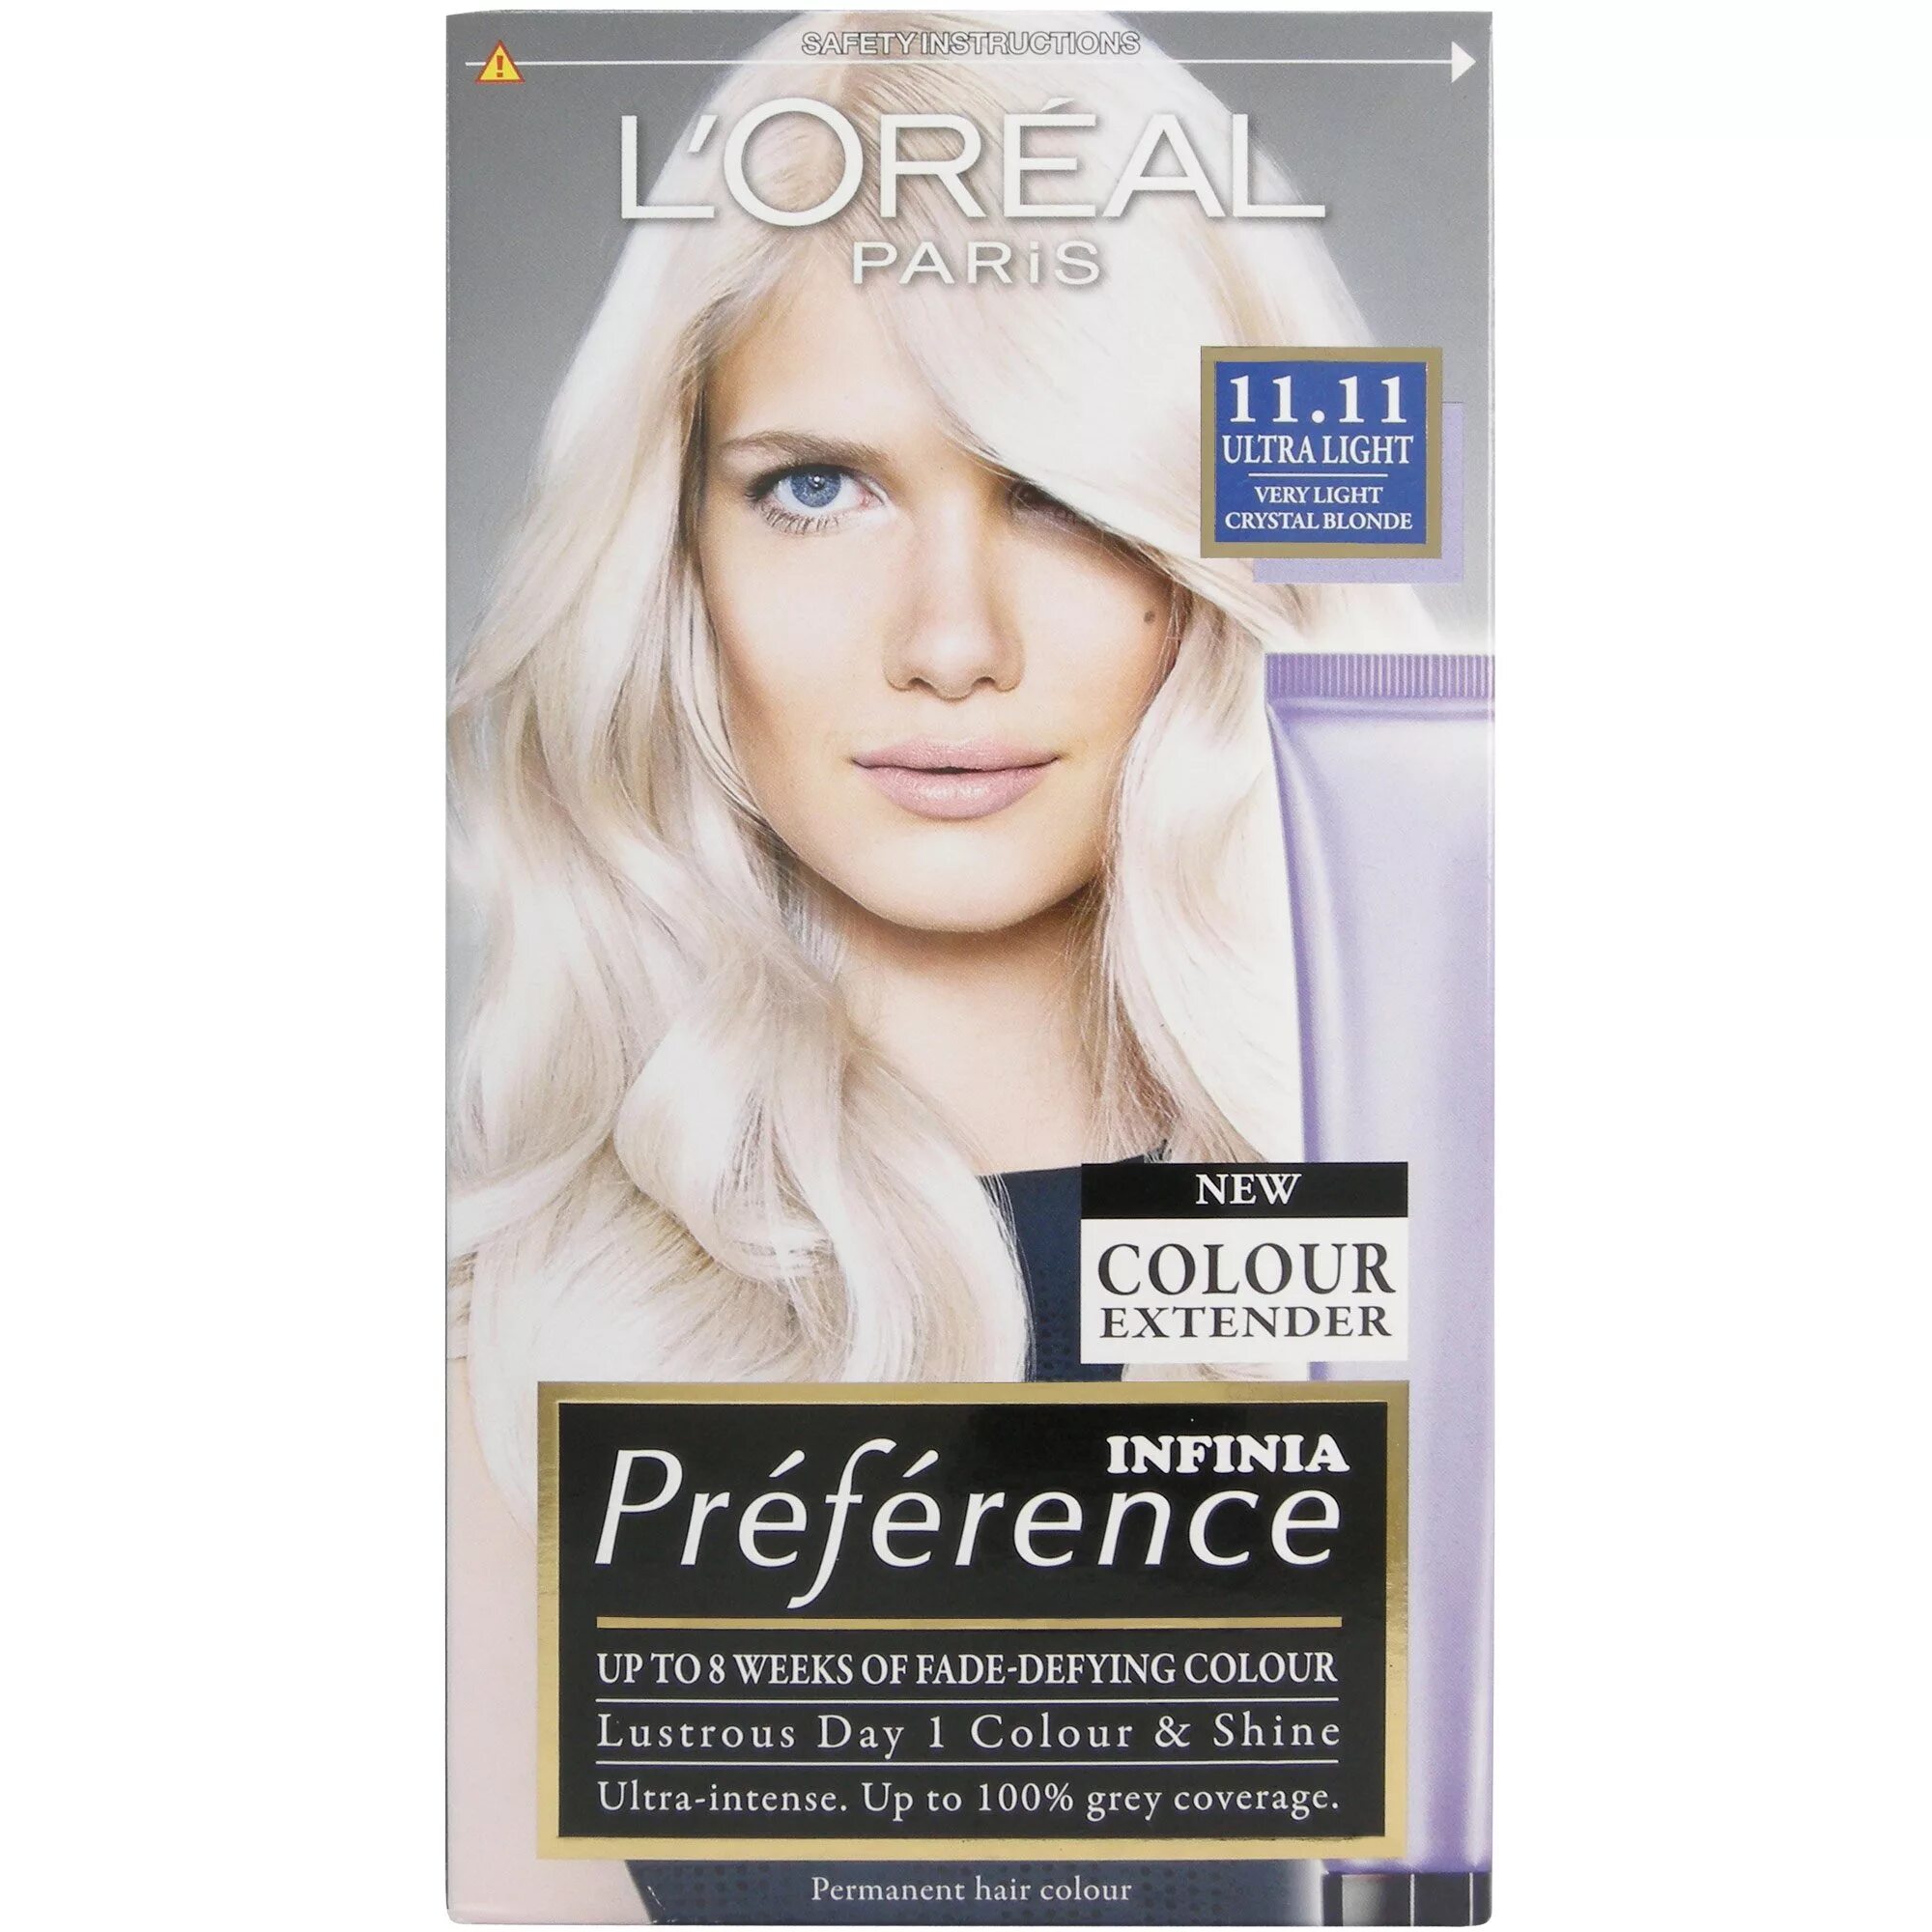 Краска лореаль ультра пепельный. Преферанс 11.21. L'Oreal Paris preference осветлитель для волос, ультра-платиновый блонд. Лореаль преферанс блонд. Лореаль преферанс платина ультра блонд.